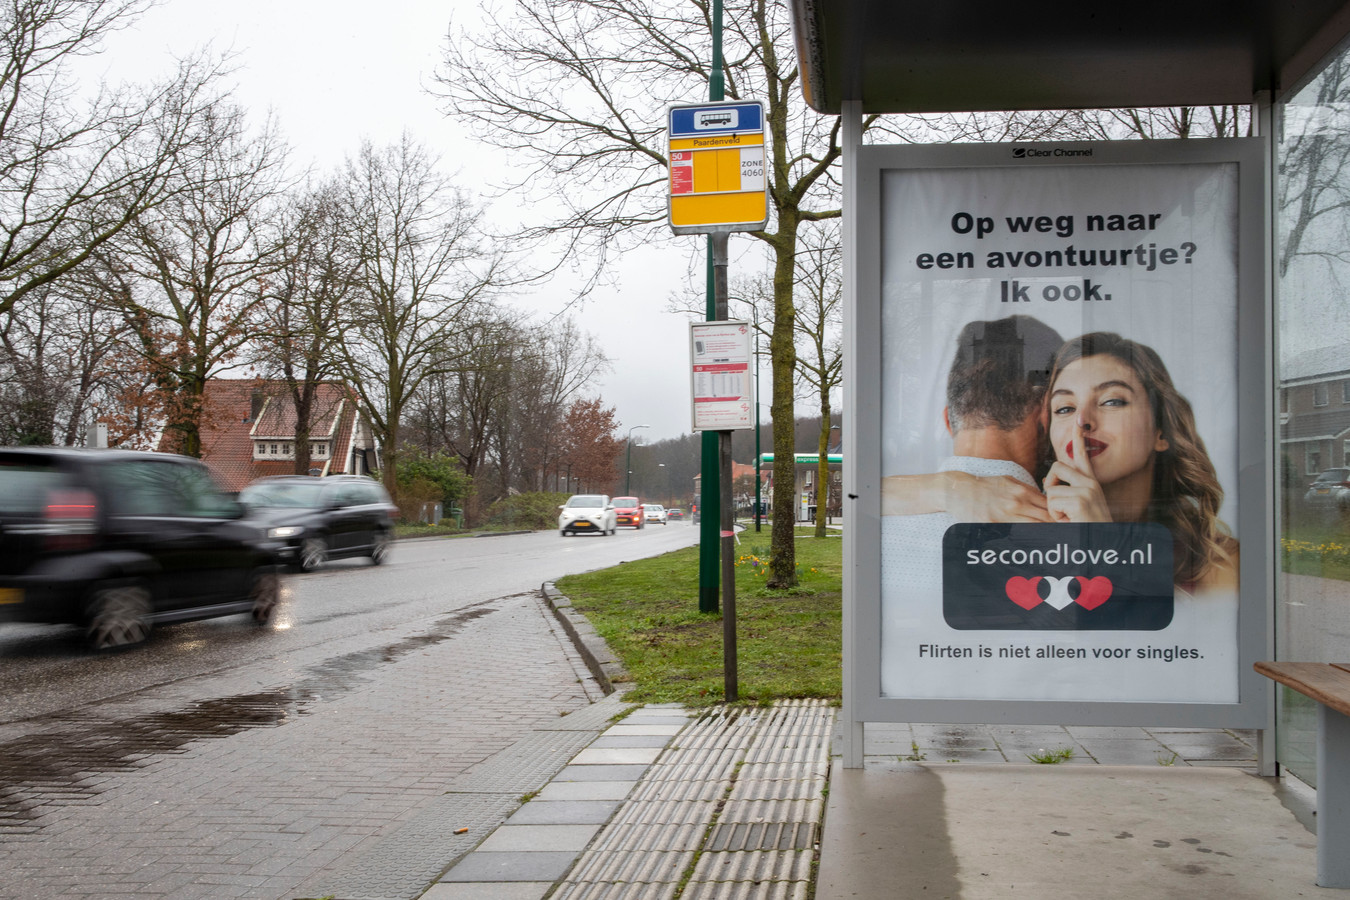 Gemeente Rhenen heeft in februari posters van datingsite "Second Love" uit bushaltes verwijderd, zoals die aan de Utrechtsestraatweg.